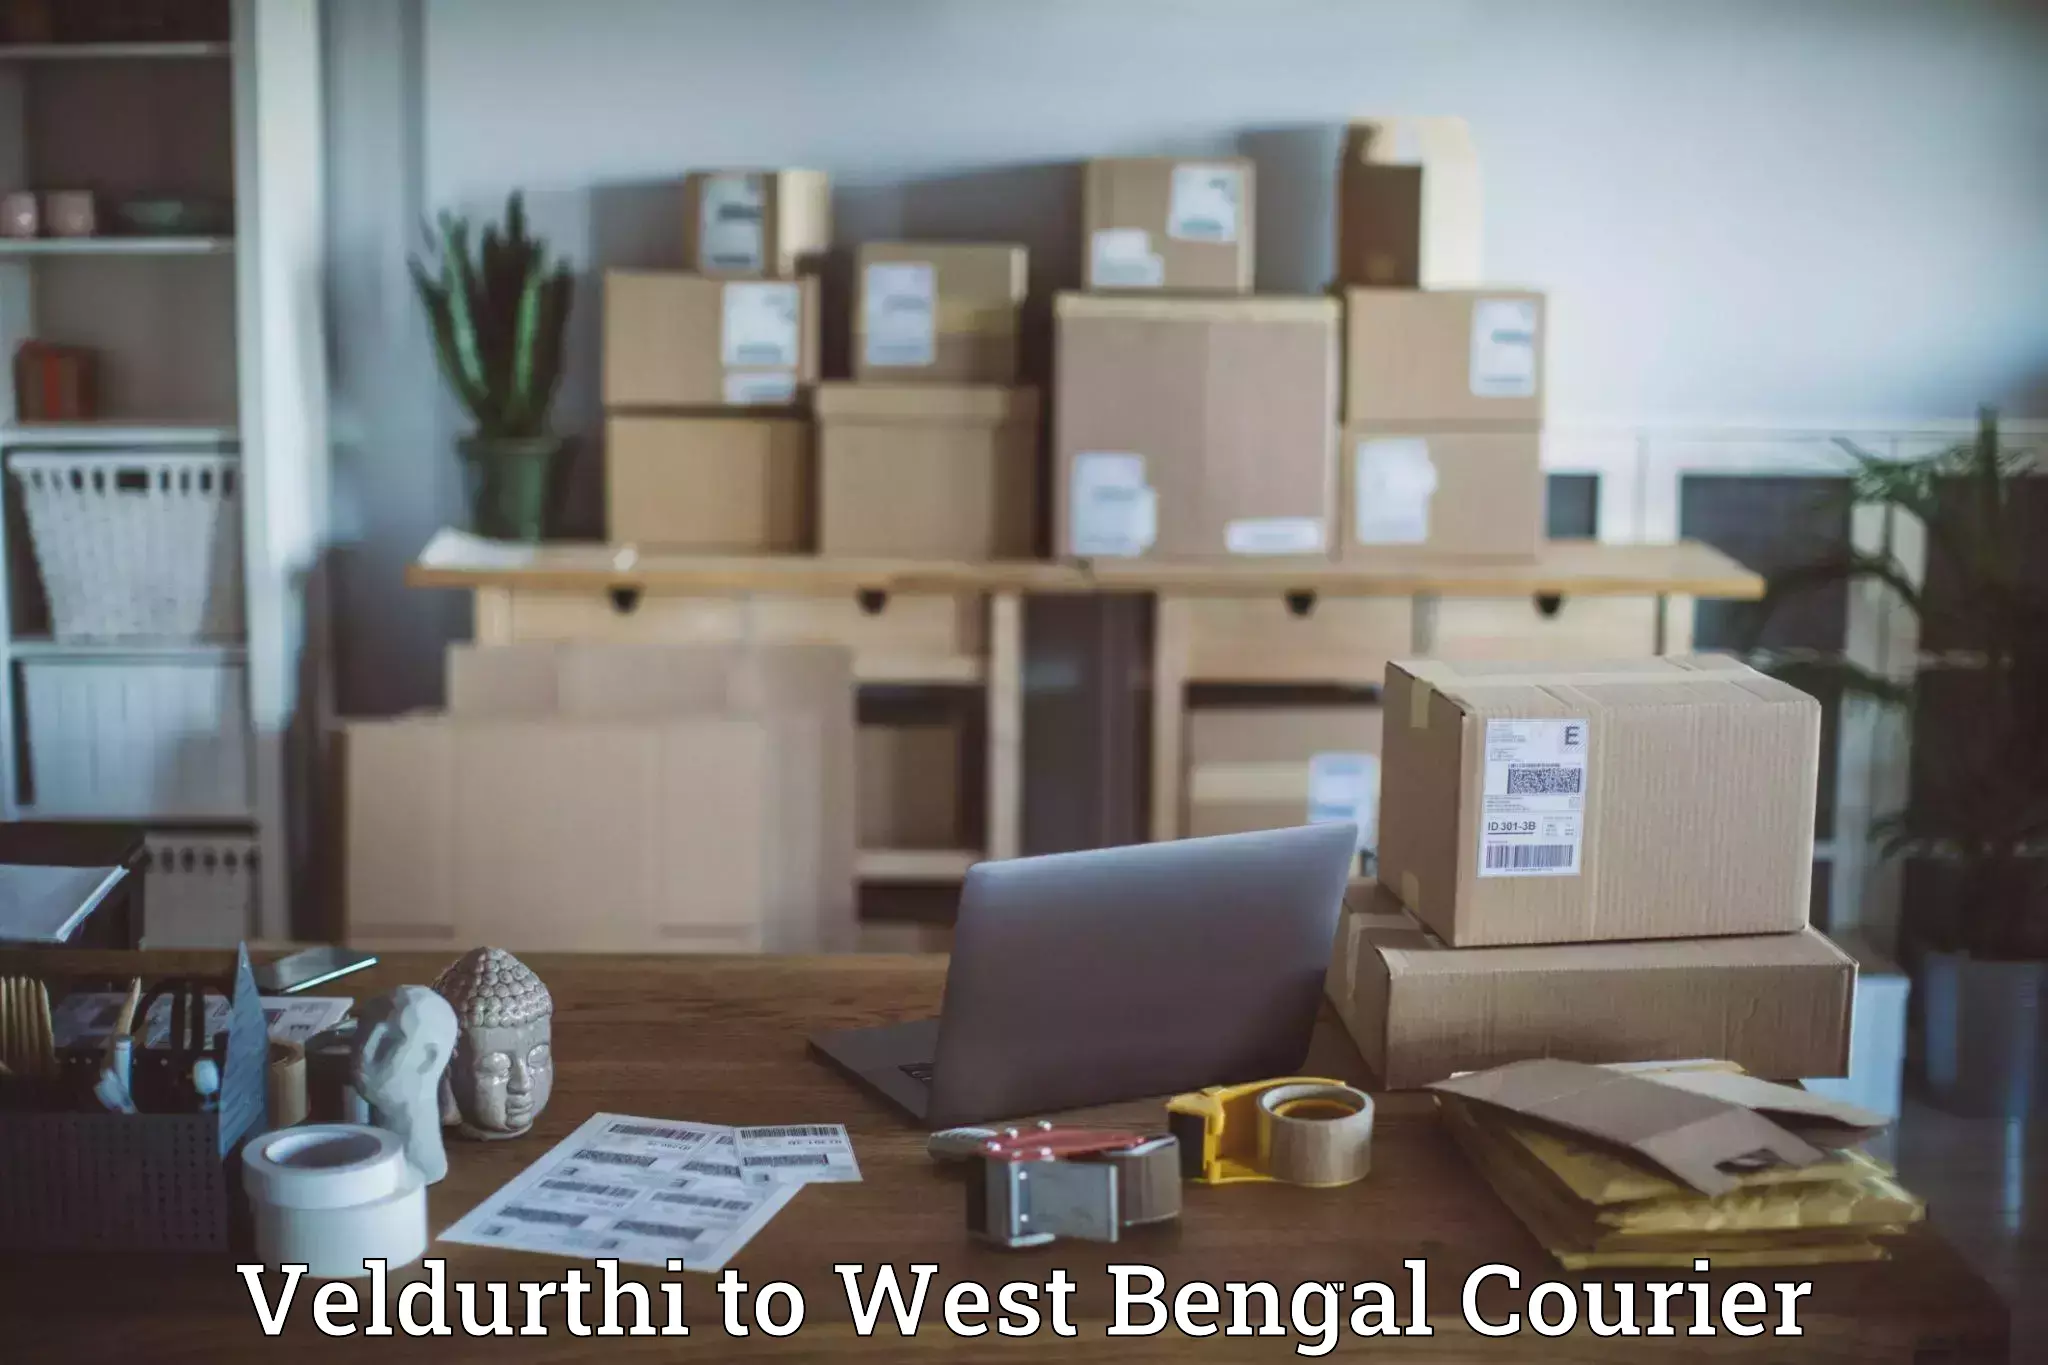 Multi-city courier Veldurthi to West Bengal